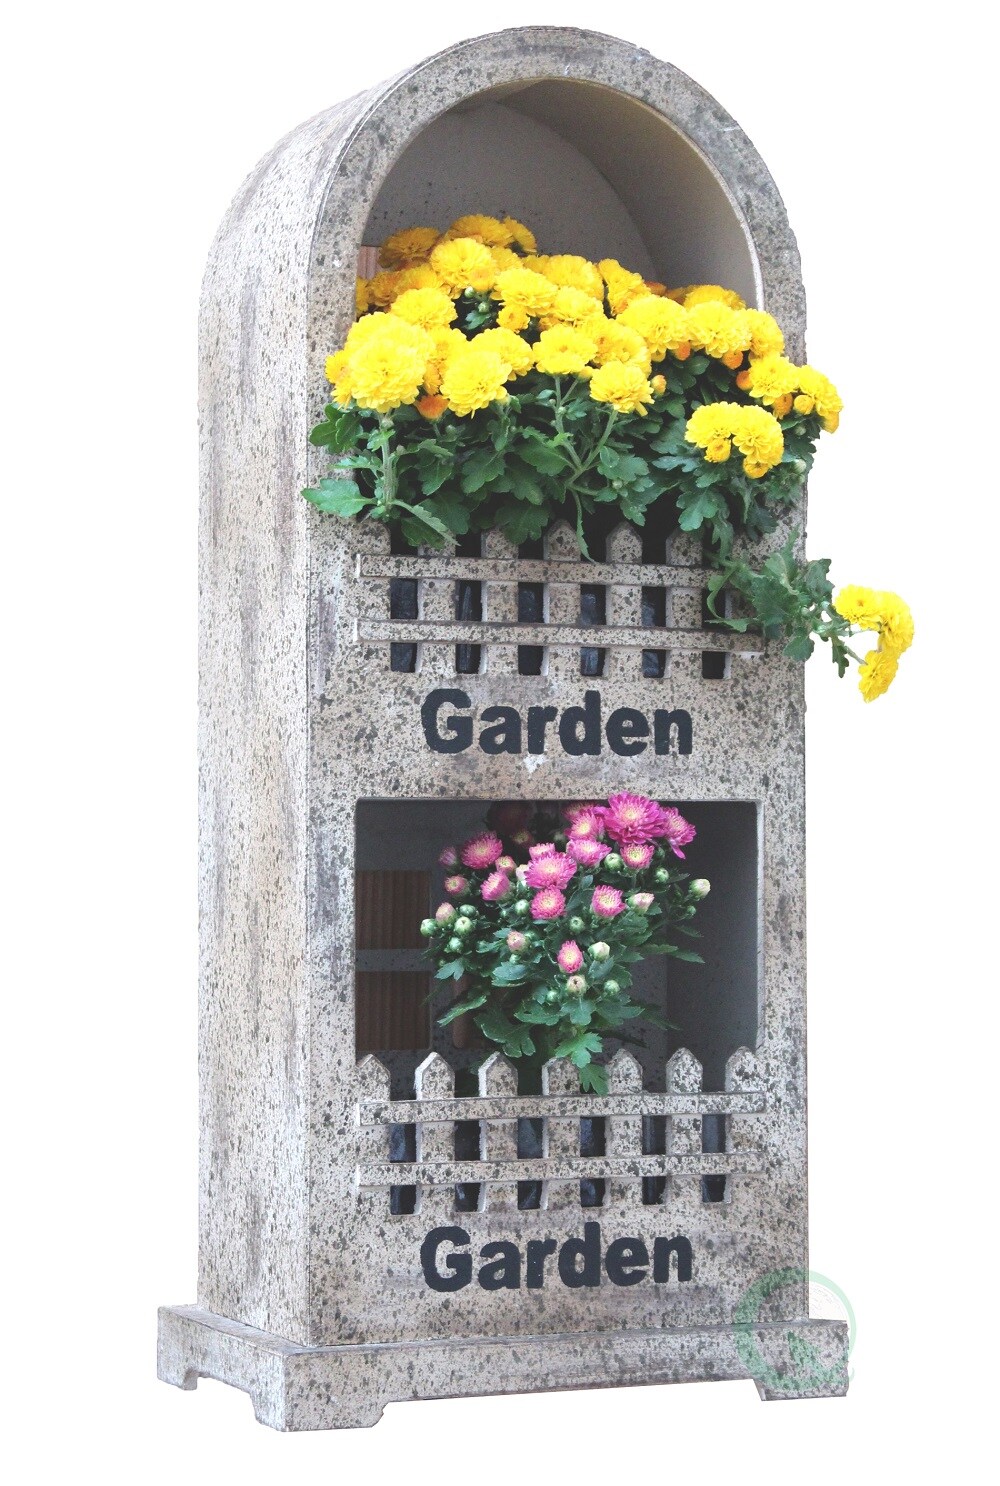 Decorative Wall or Floor Garden Planter for Indoor or Outdoor Plants